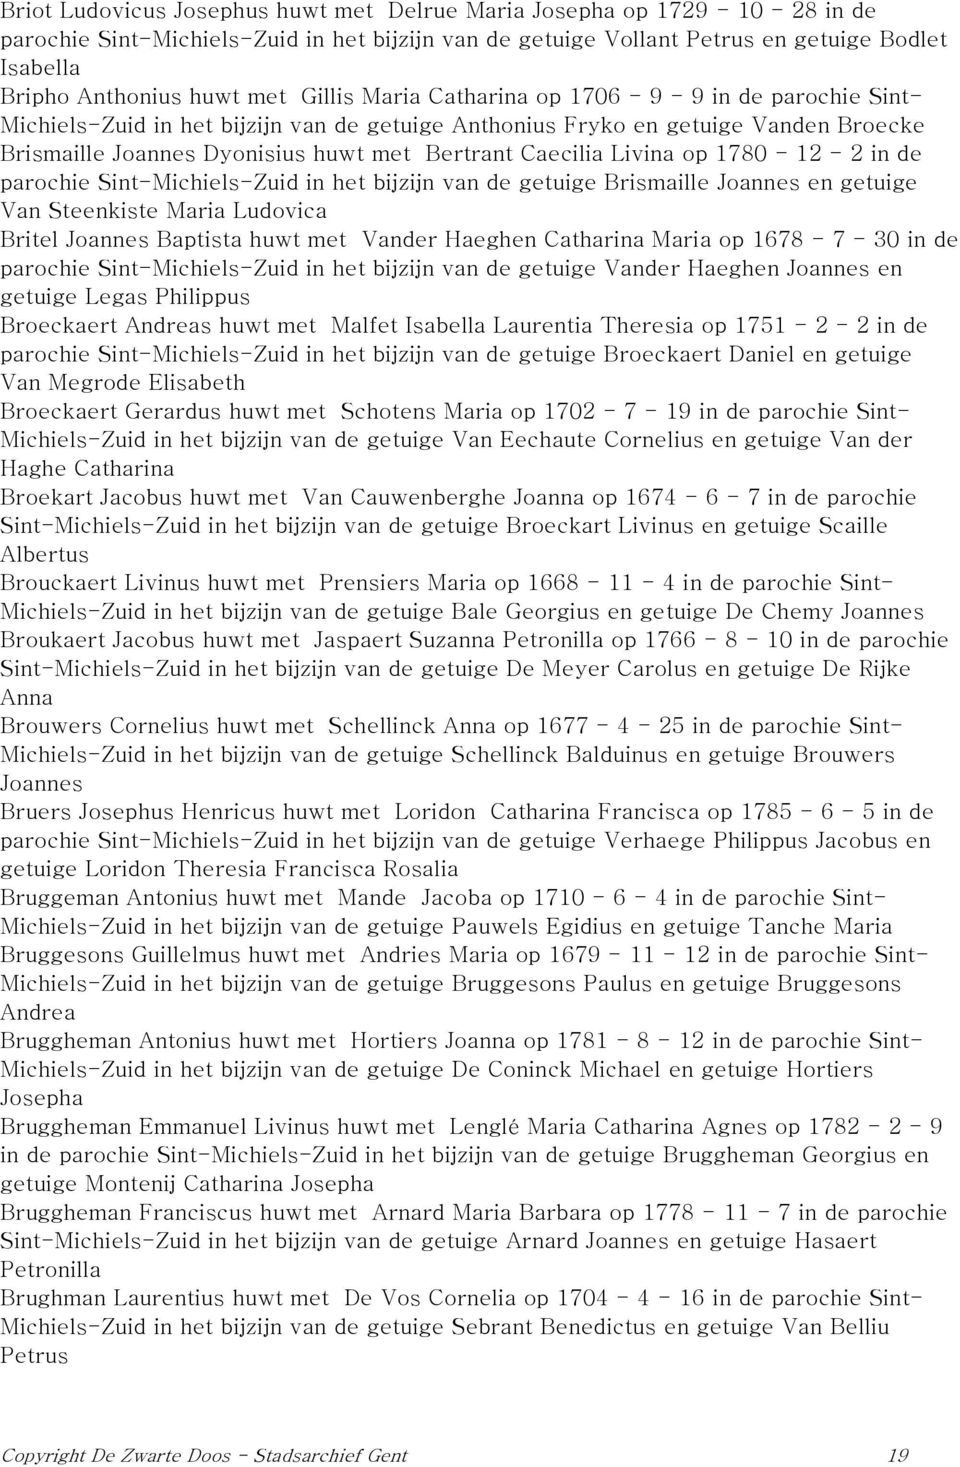 Caecilia Livina op 1780-12 - 2 in de parochie Sint-Michiels-Zuid in het bijzijn van de getuige Brismaille Joannes en getuige Van Steenkiste Maria Ludovica Britel Joannes Baptista huwt met Vander